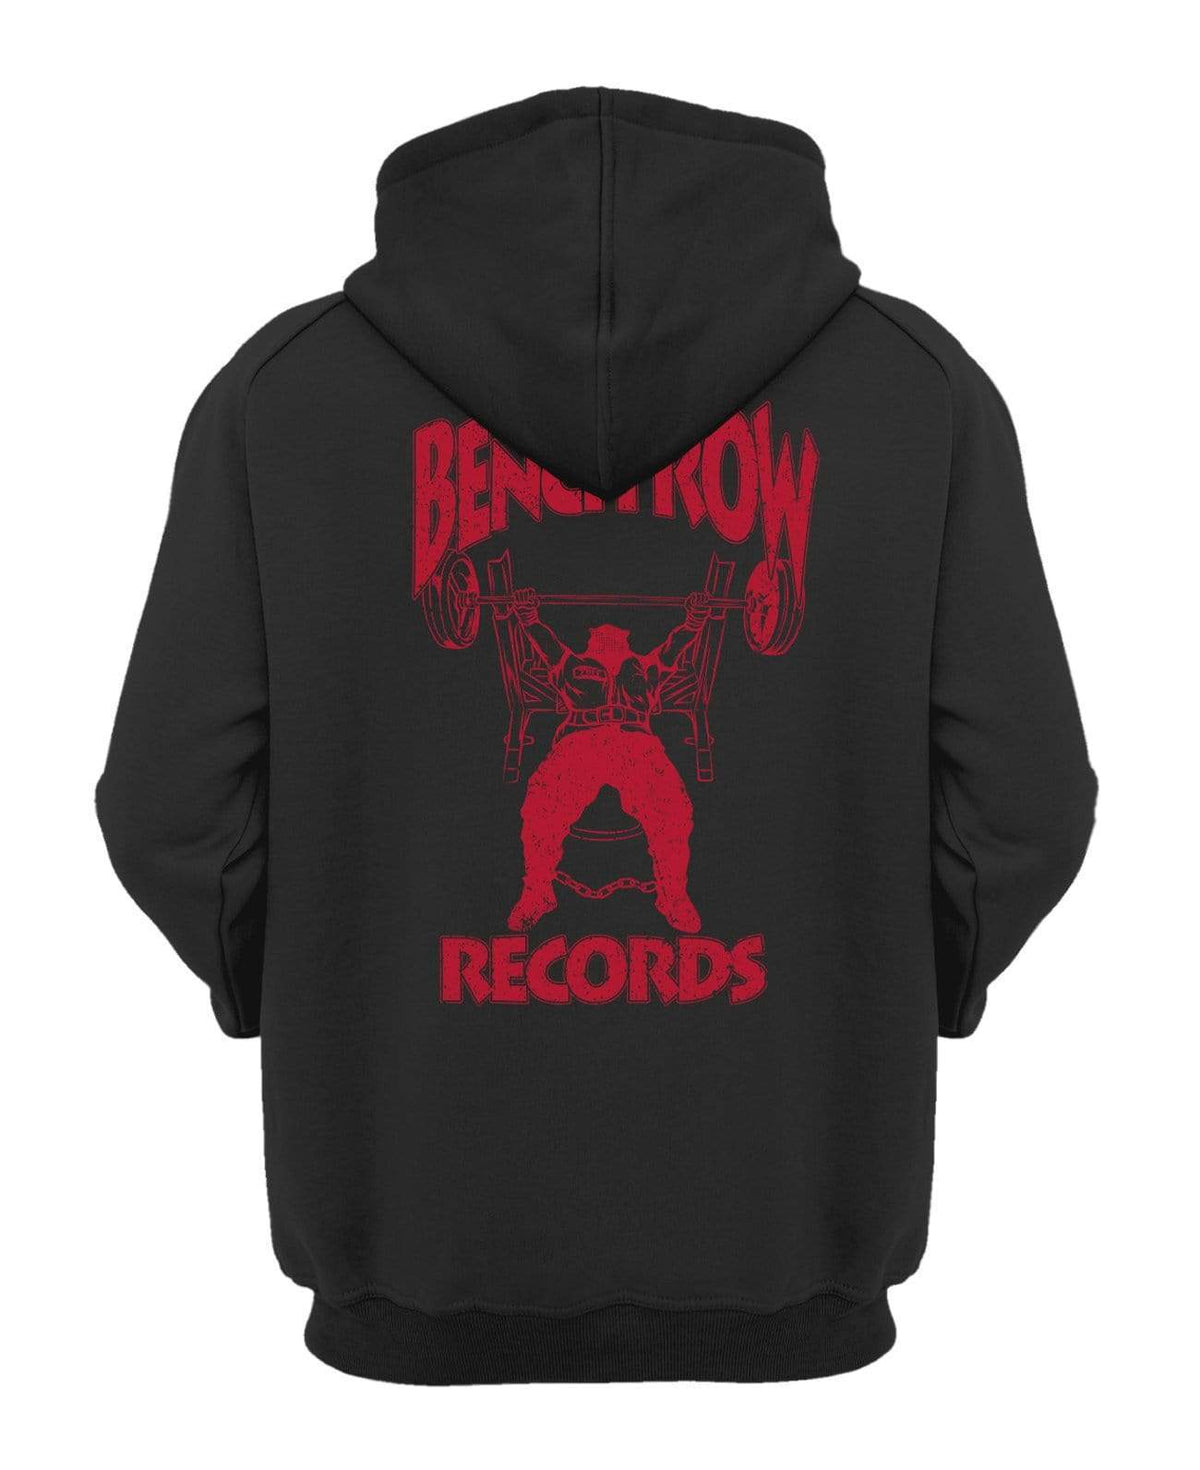 Bench Row Records Hooded Sweatshirt XS / Black v1 TuffWraps.com